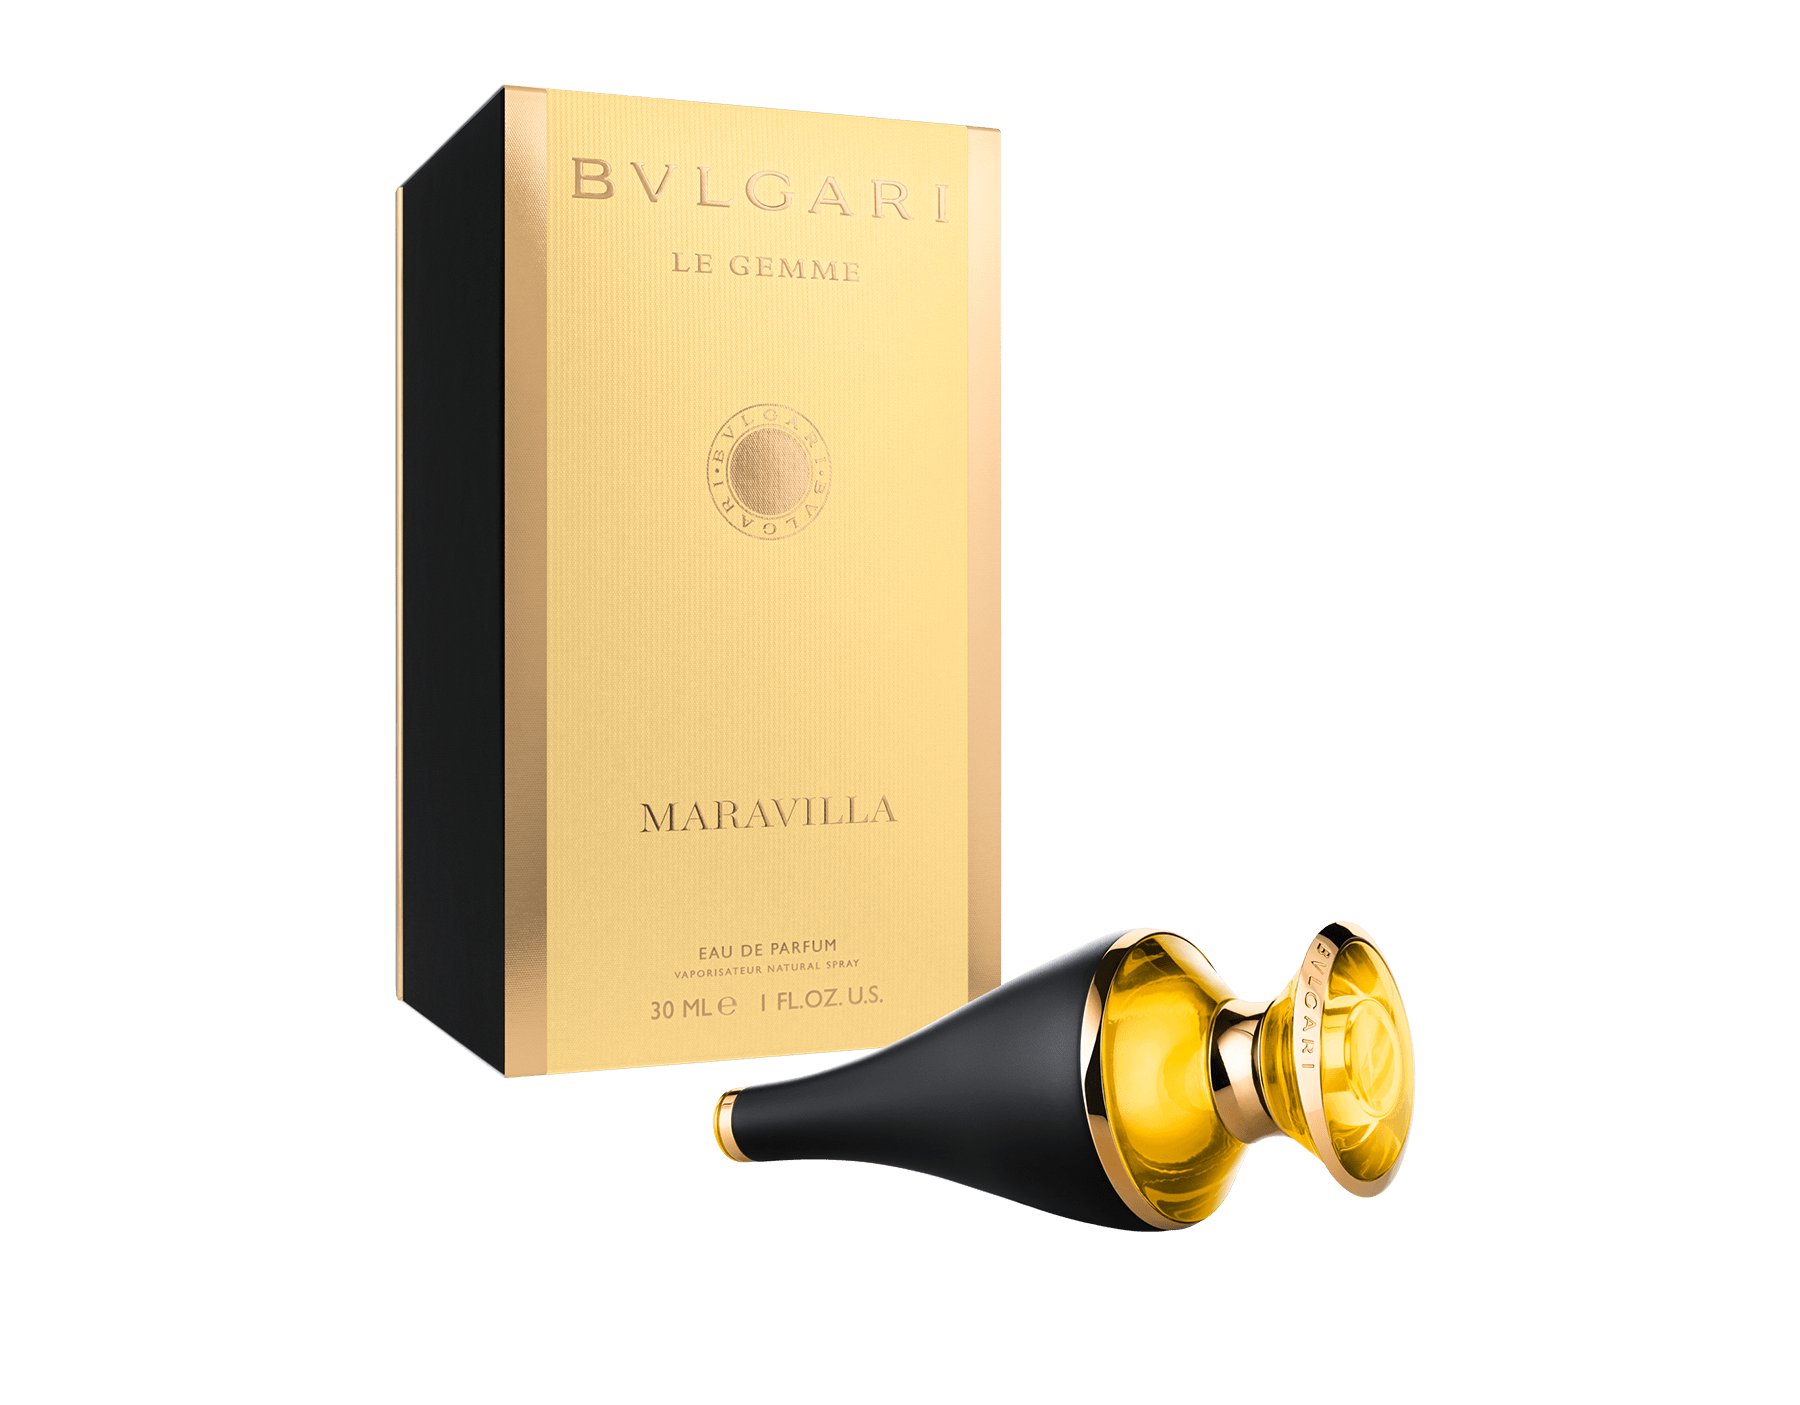 bvlgari gold bottle